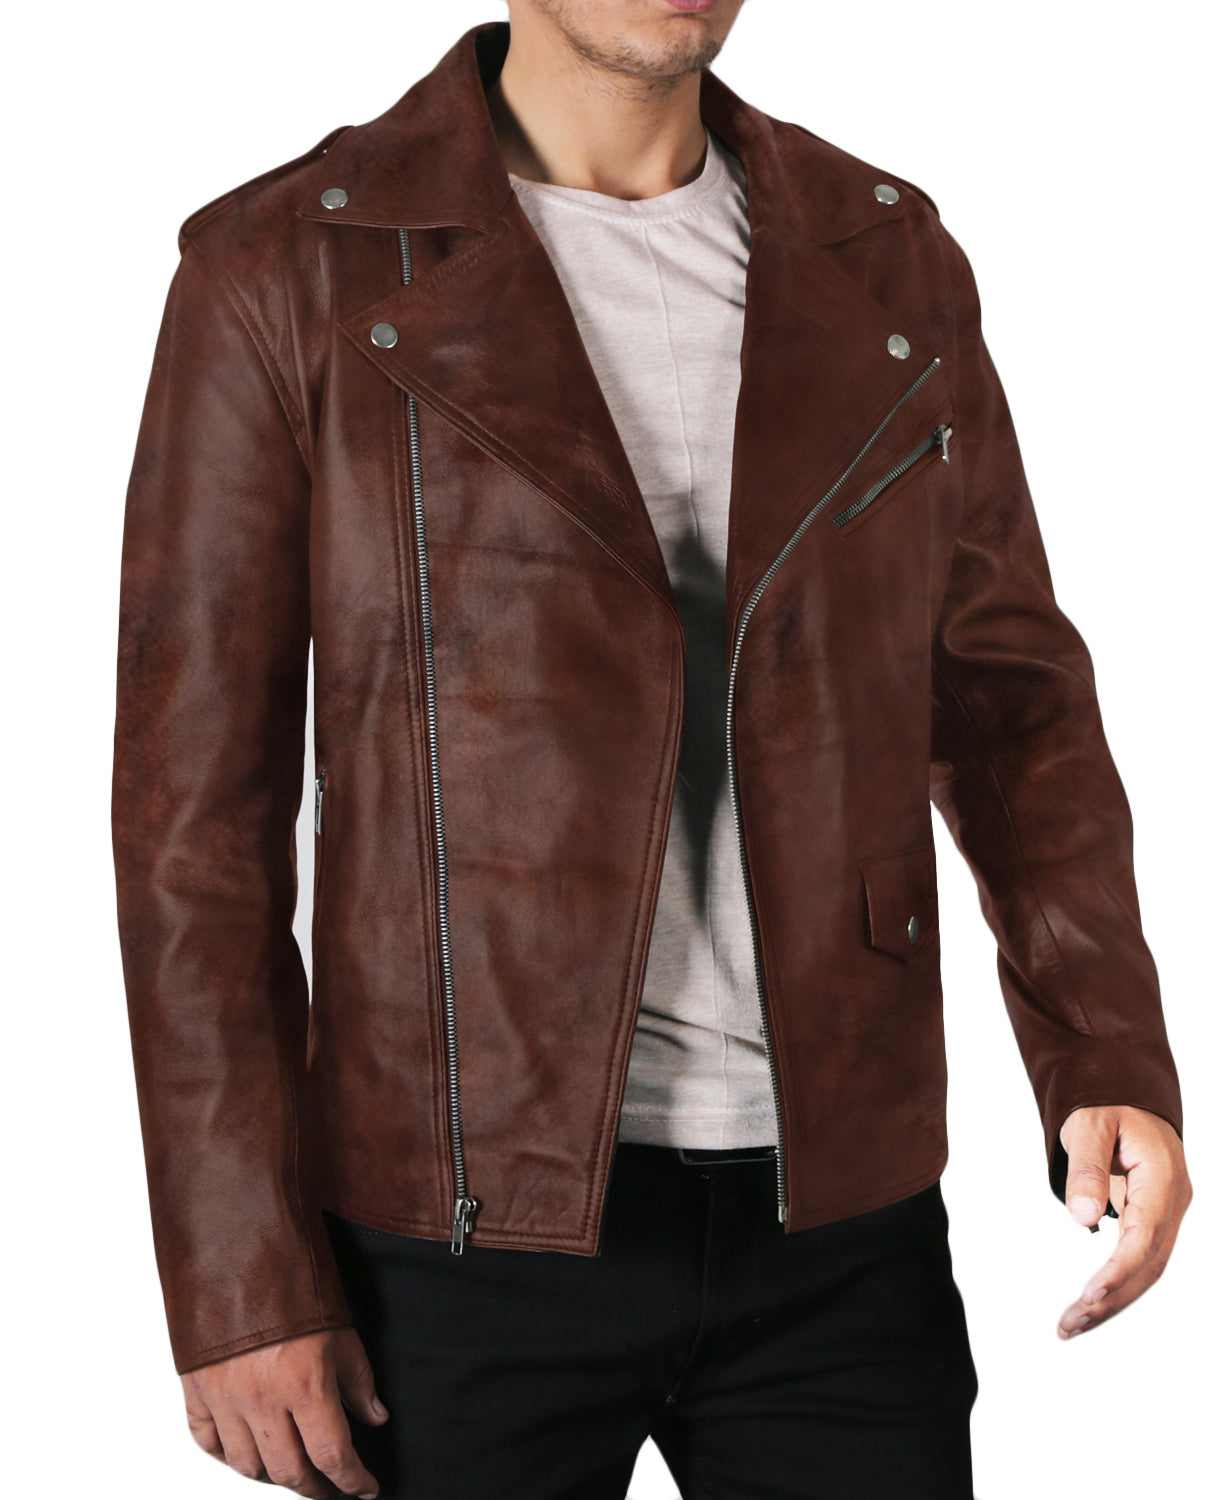 Leather Jackets Hub Mens Genuine Lambskin Leather Jacket (Black, Double Rider Jacket) - 1501009